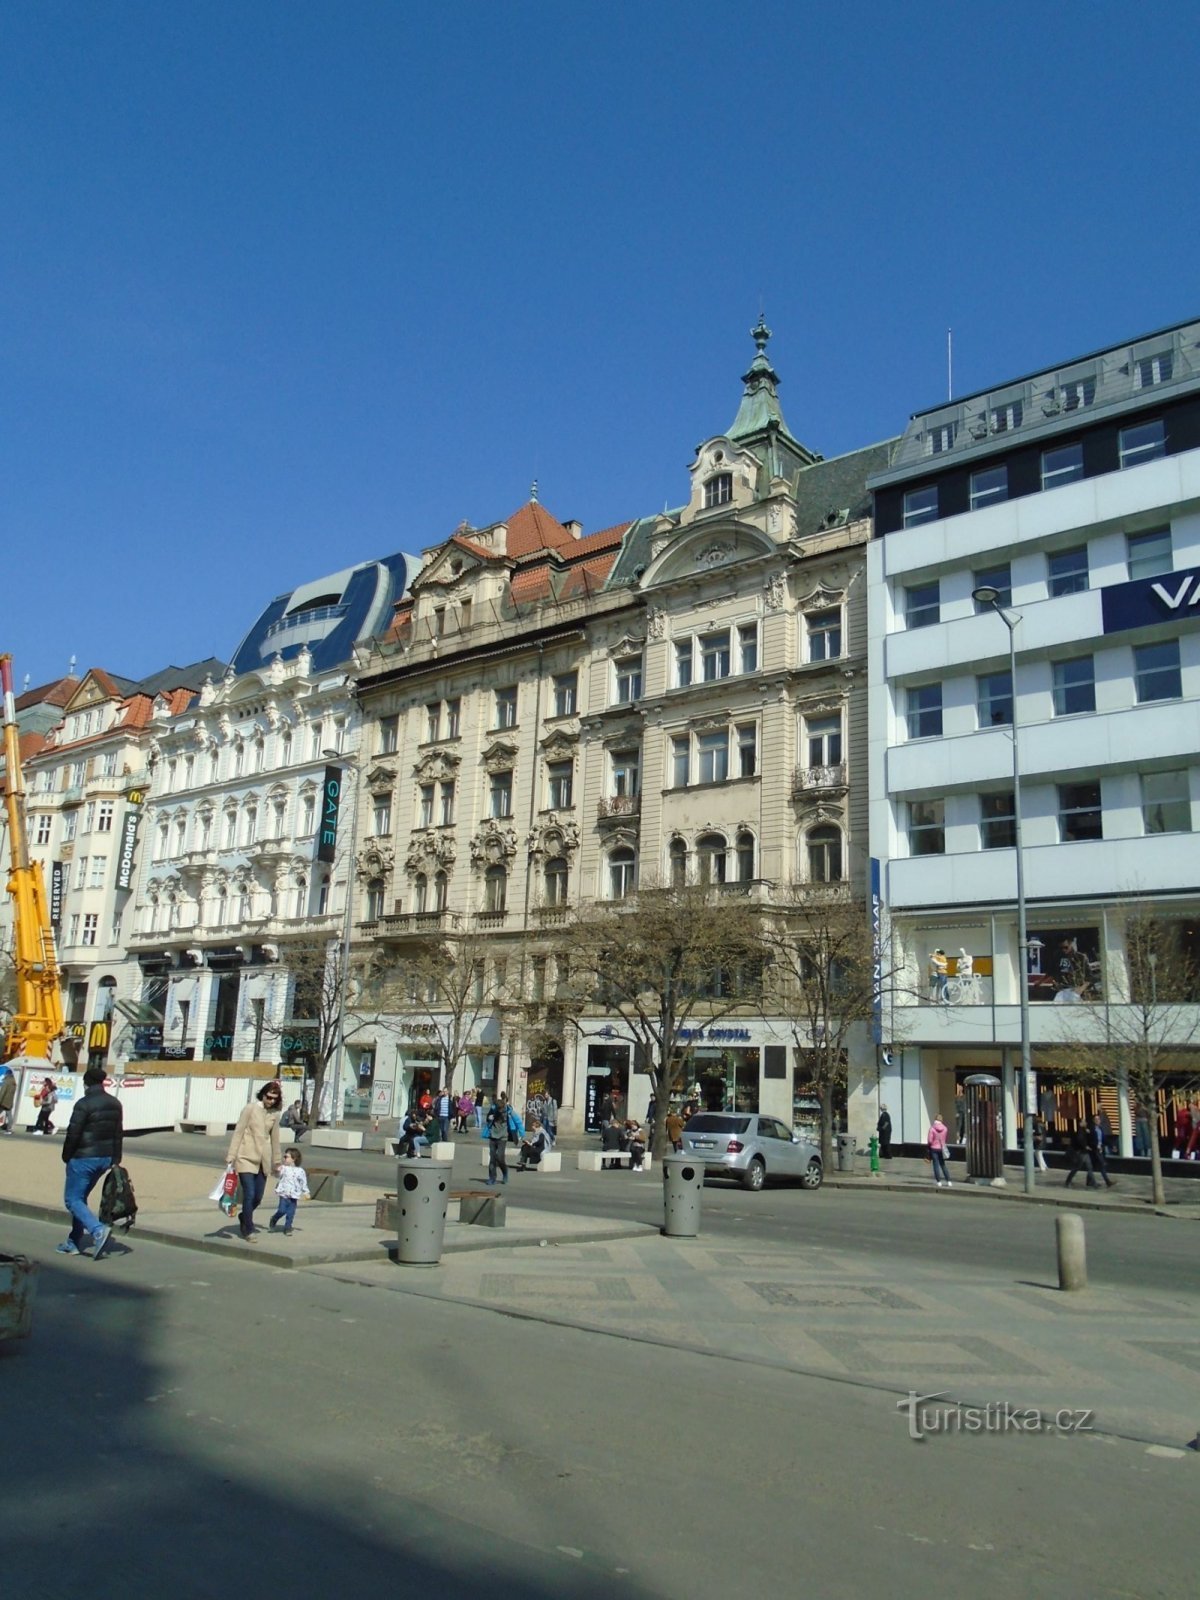 Václavské náměstí čp. 835 (Praha, 1.4.2019)